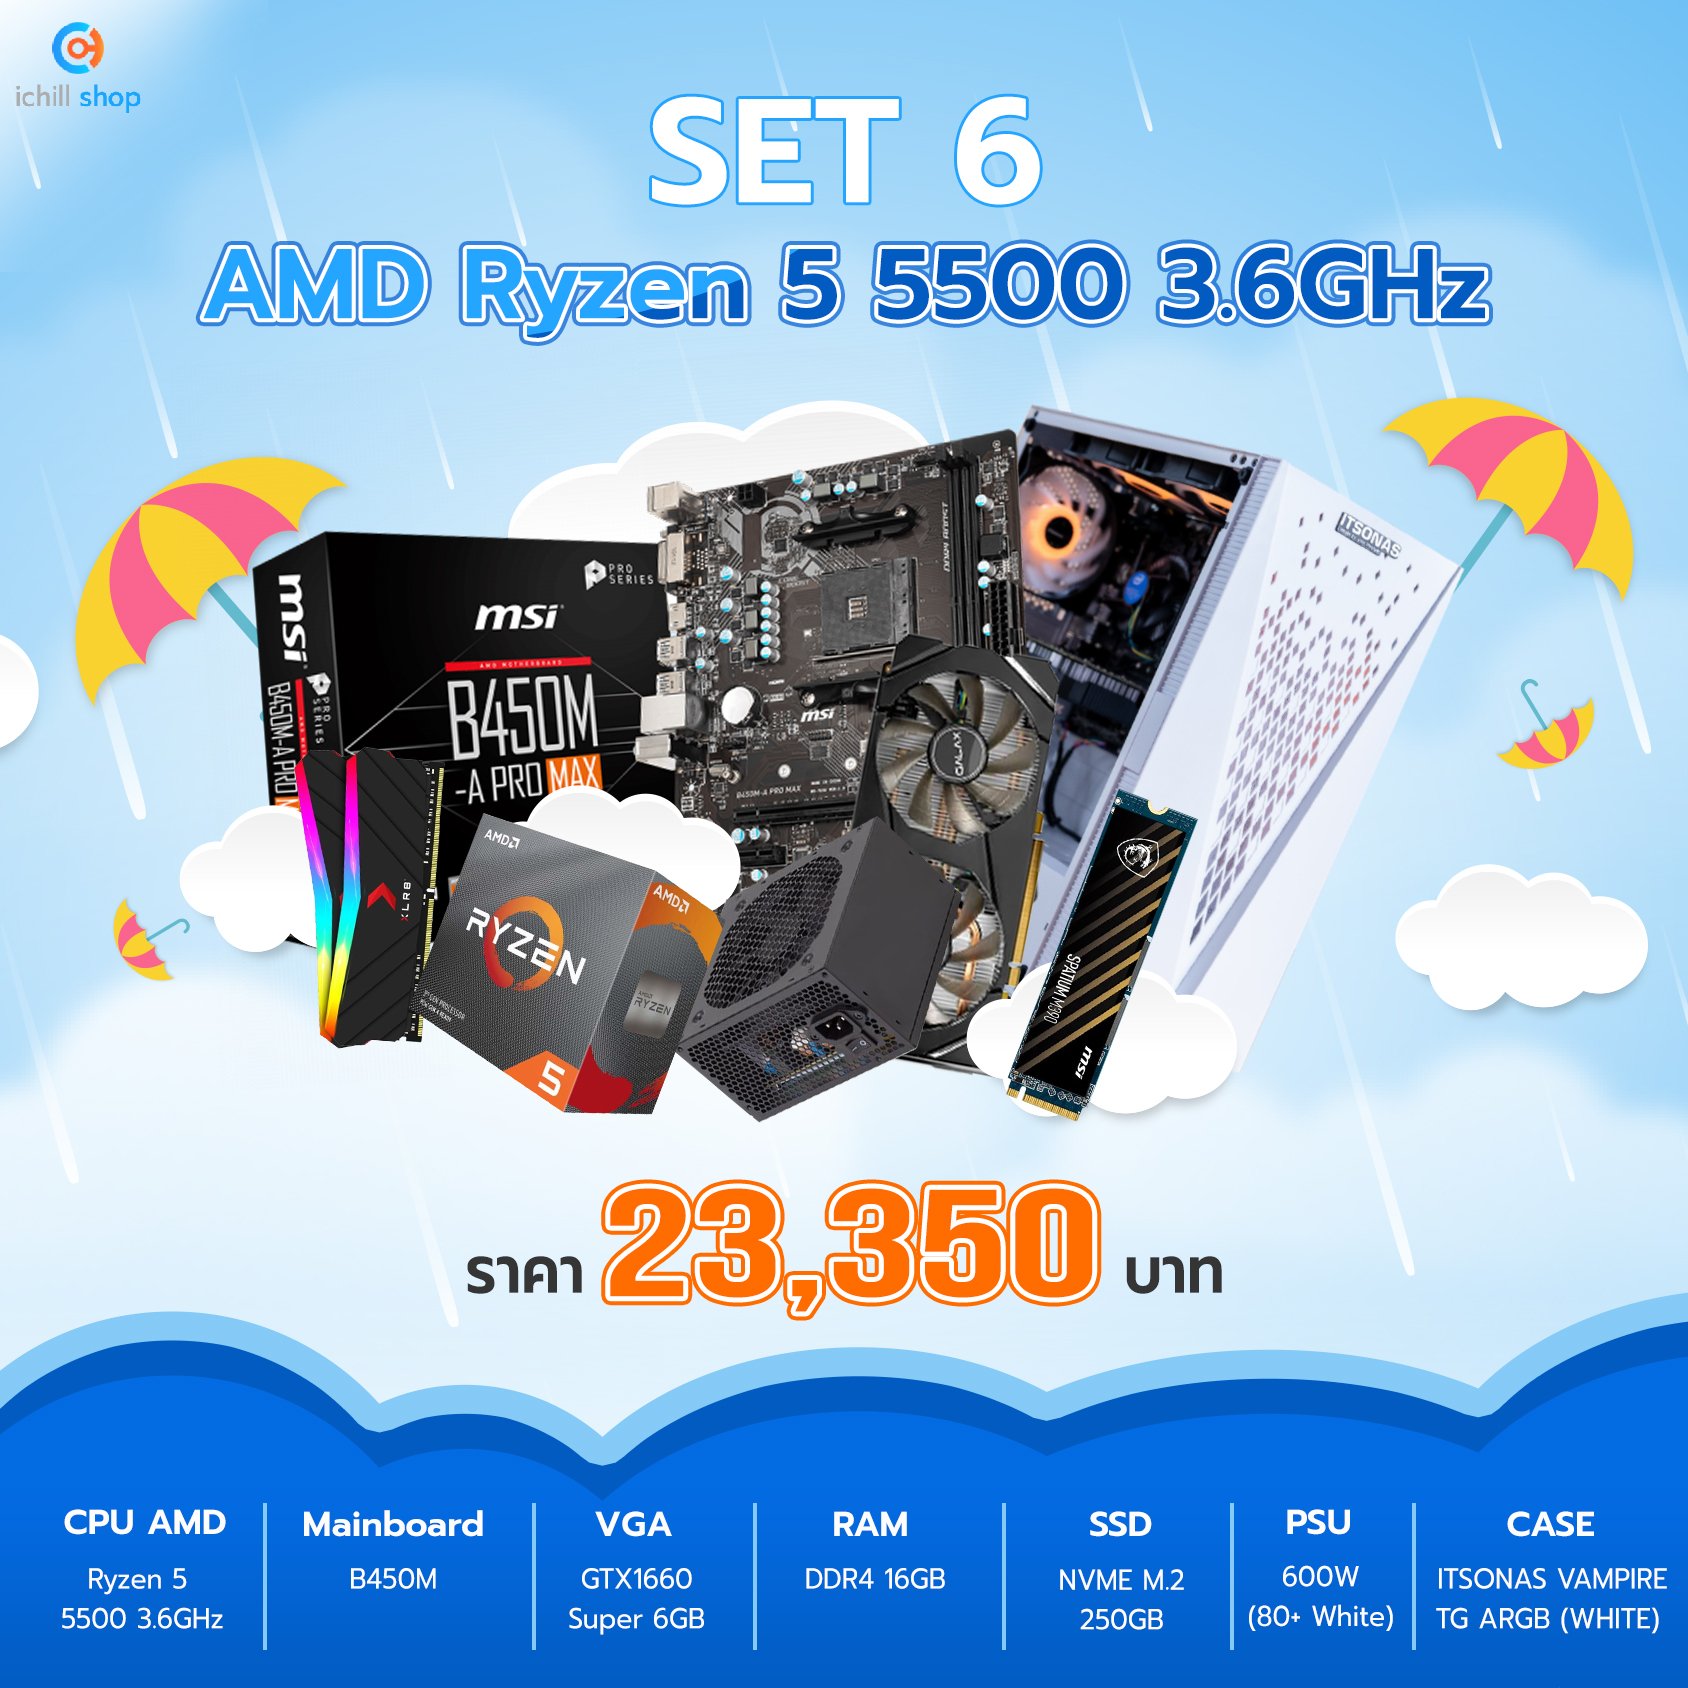 คอมประกอบ AMD Ryzen 5 5500 3.6GHz / MB B450M / 16GB (8X2) DDR4 3200MHz / GTX 1660 Super / SSD M.2 250GB / 600W.80+ /CASE